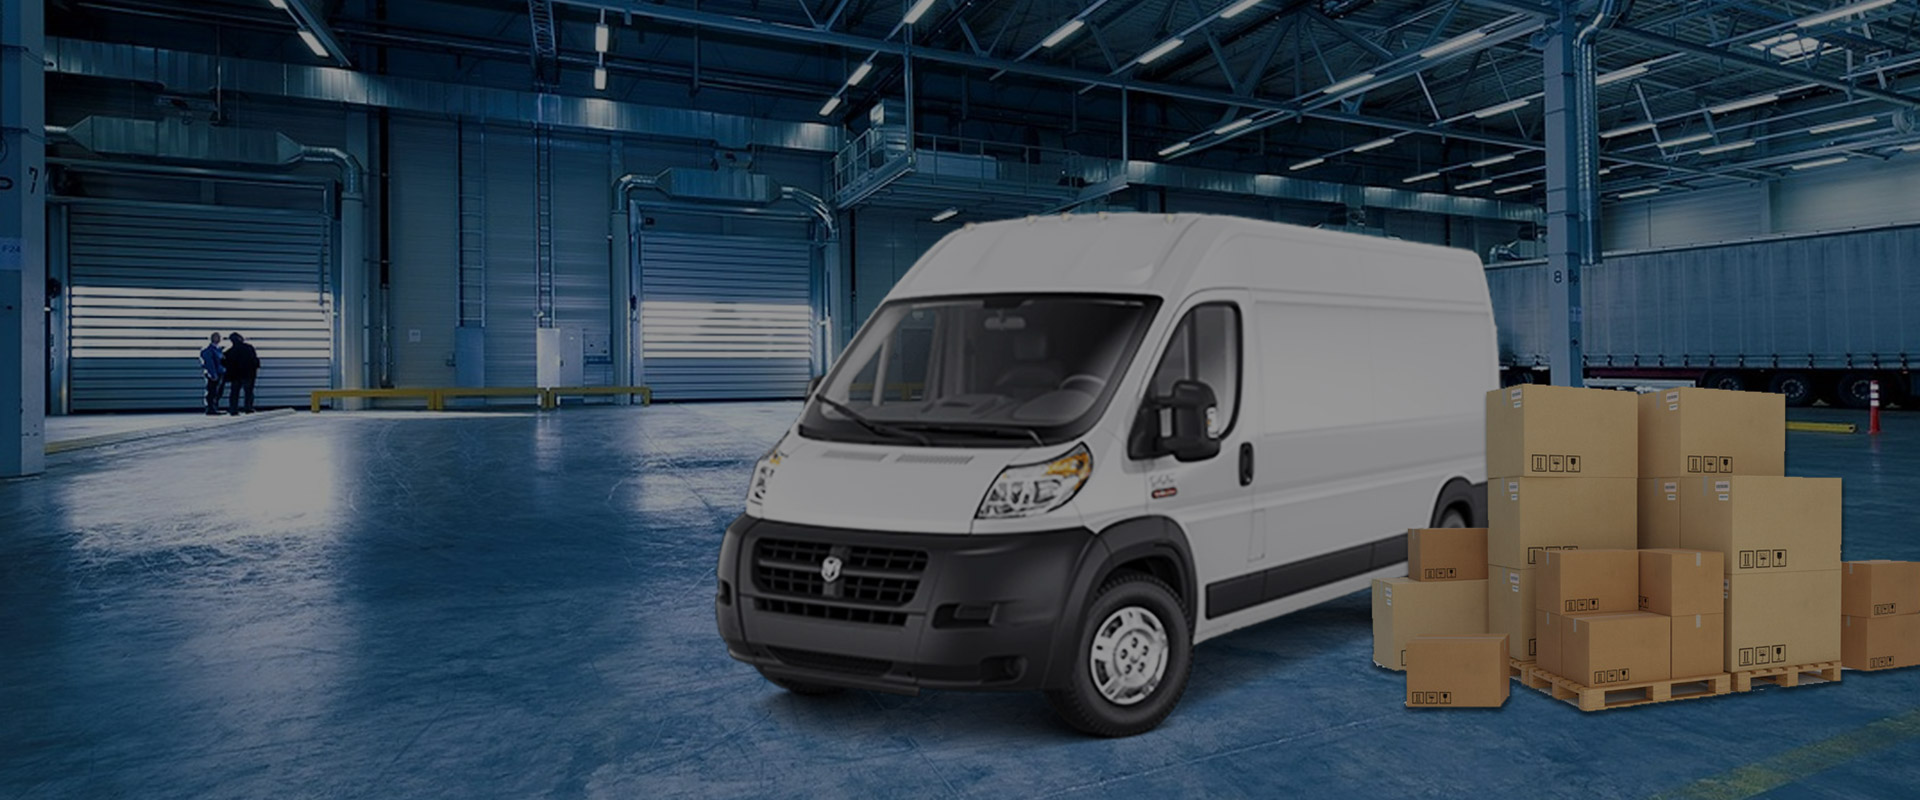 last mile delivery cargo van, get a free estimate Newark, Elizabeth, Passaic  NJ NY